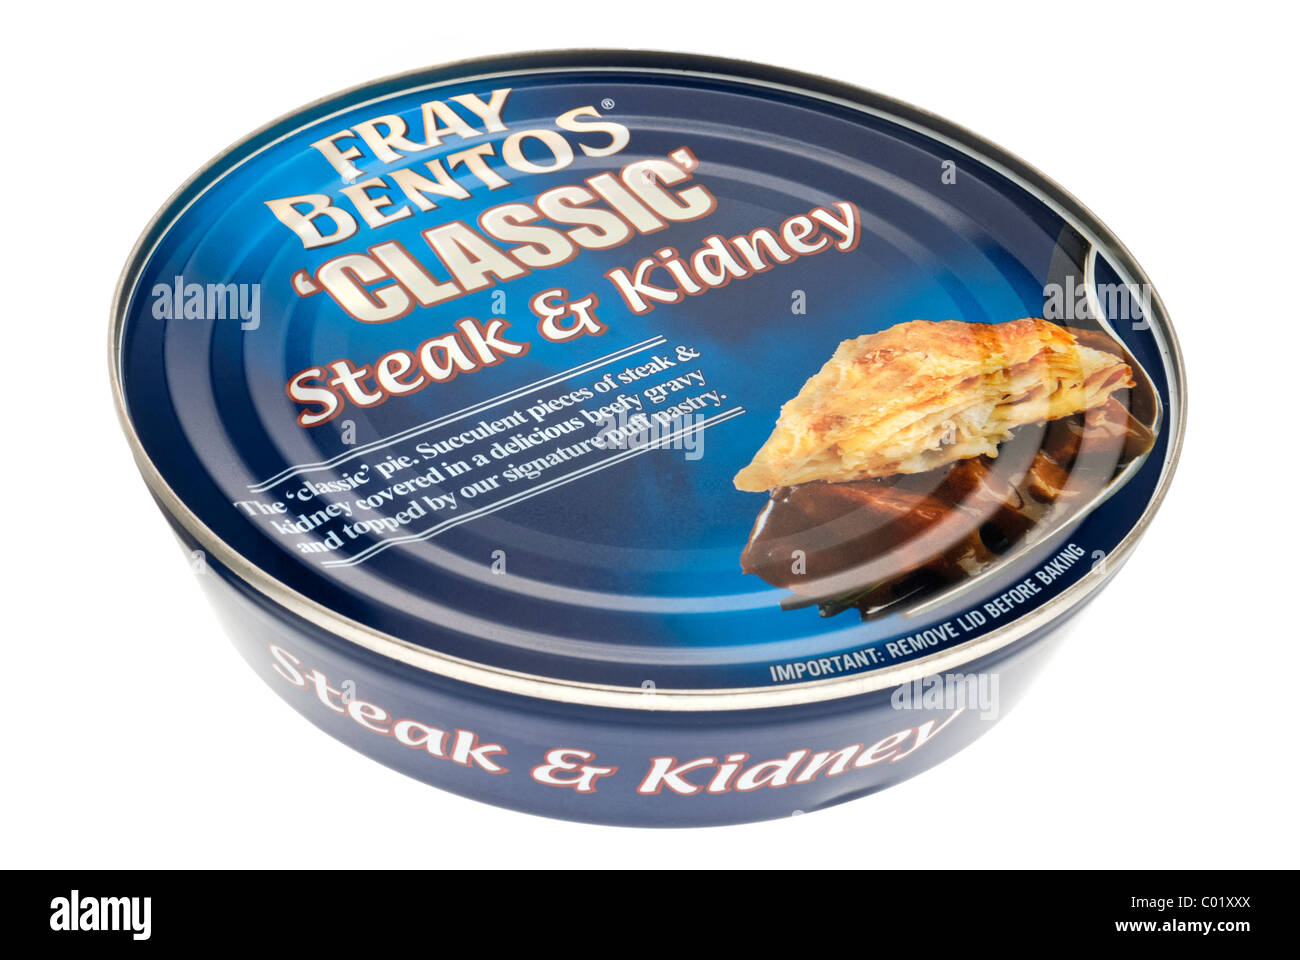 Fray Bentos Steak & Kidney Pie (425g) - Pack of 2